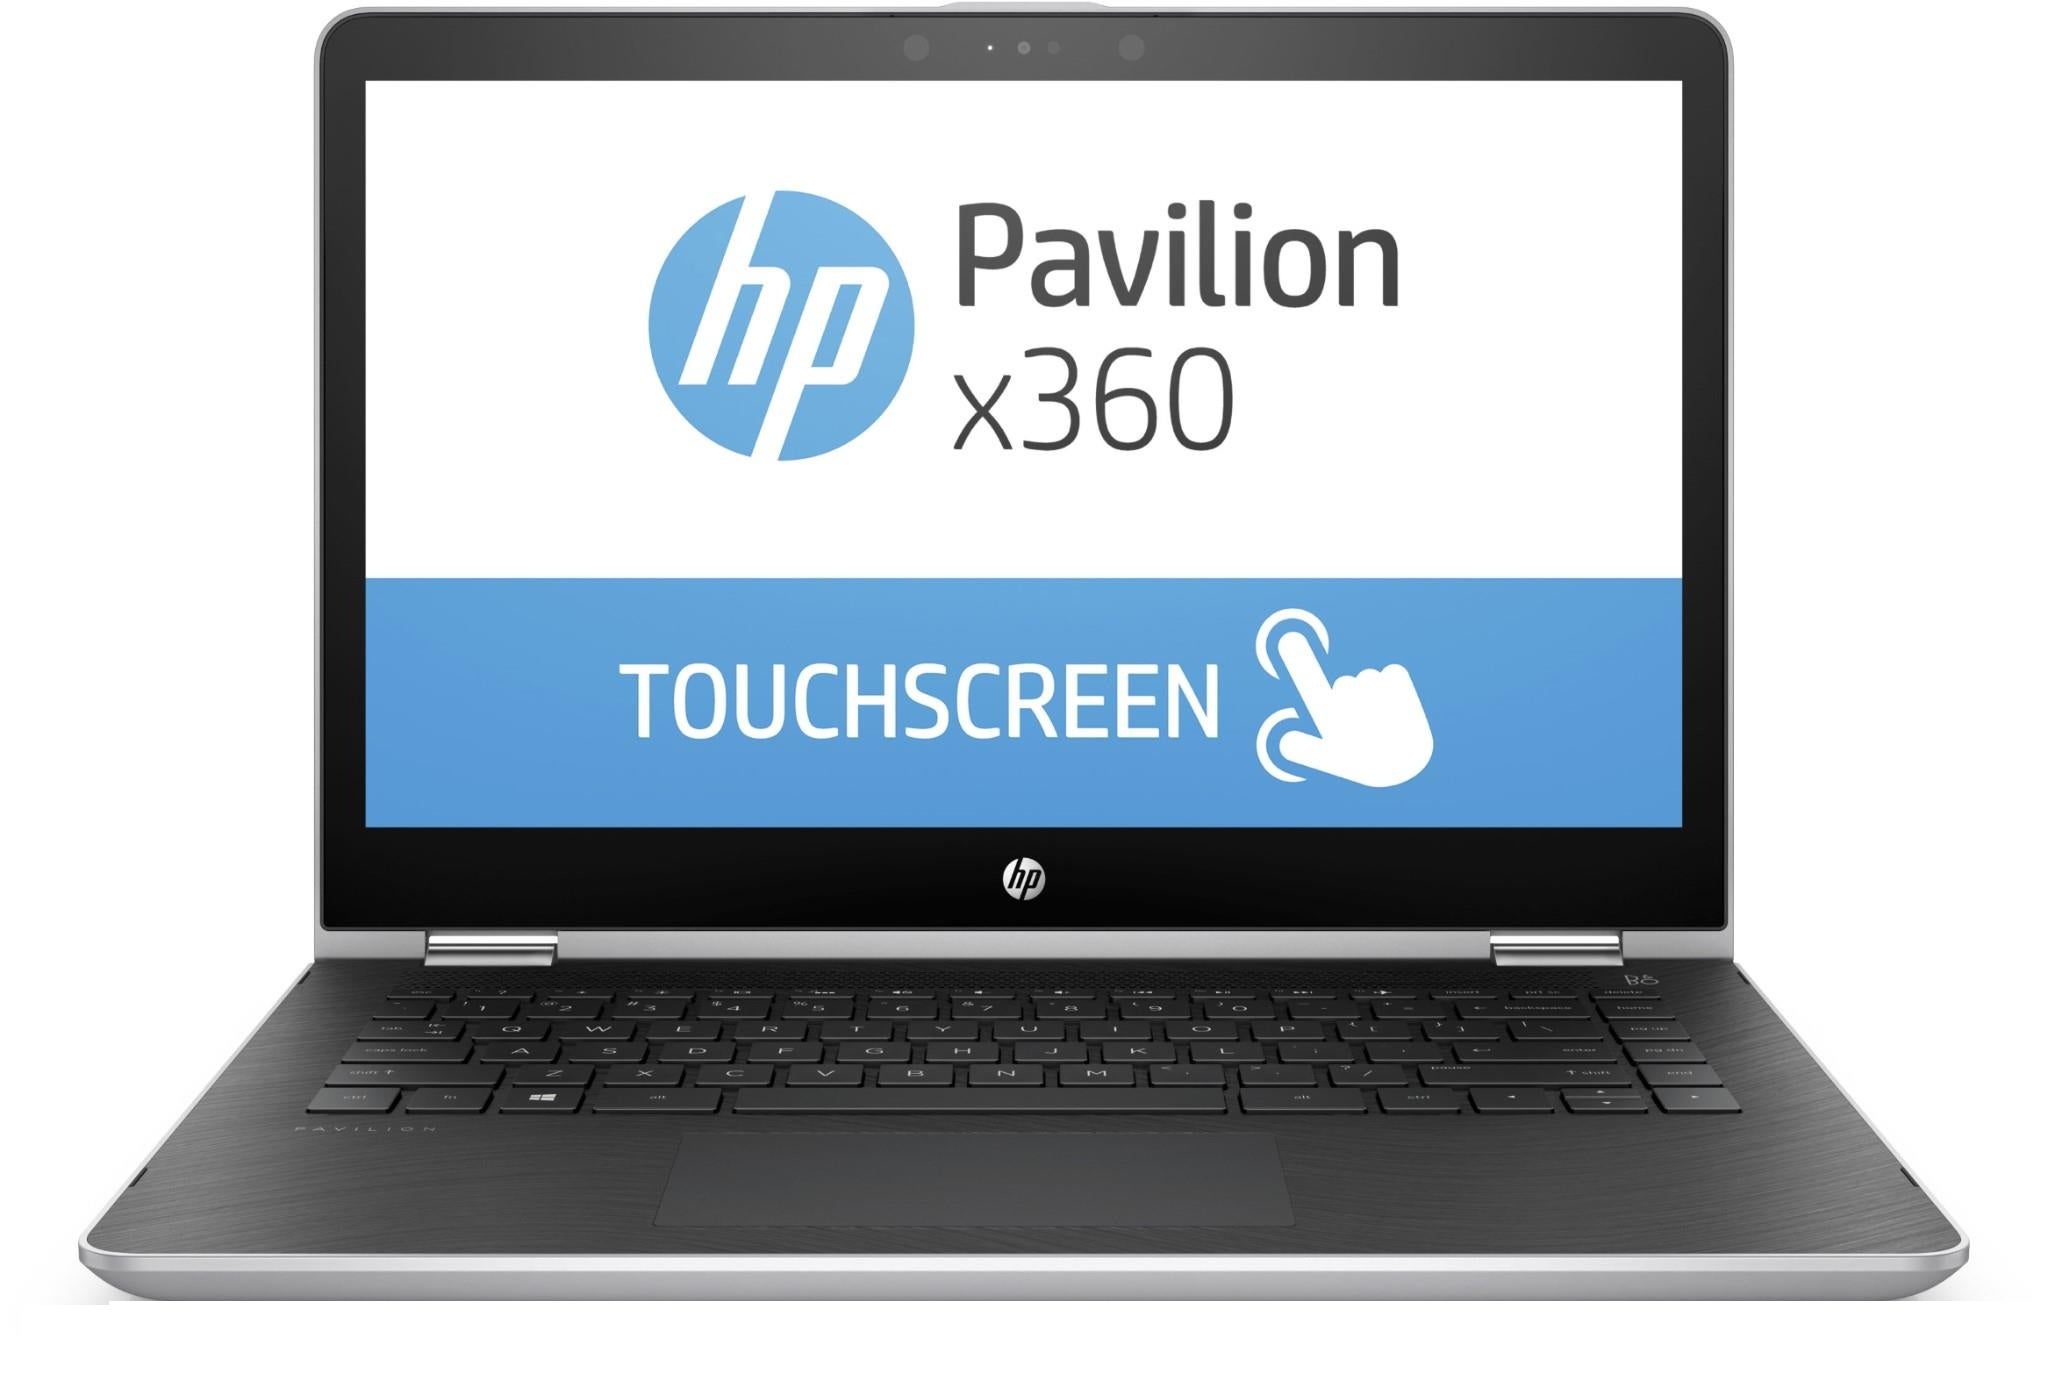 HP Pavillion X360 14 BA078TU 3LJ67PA 14inch Laptop